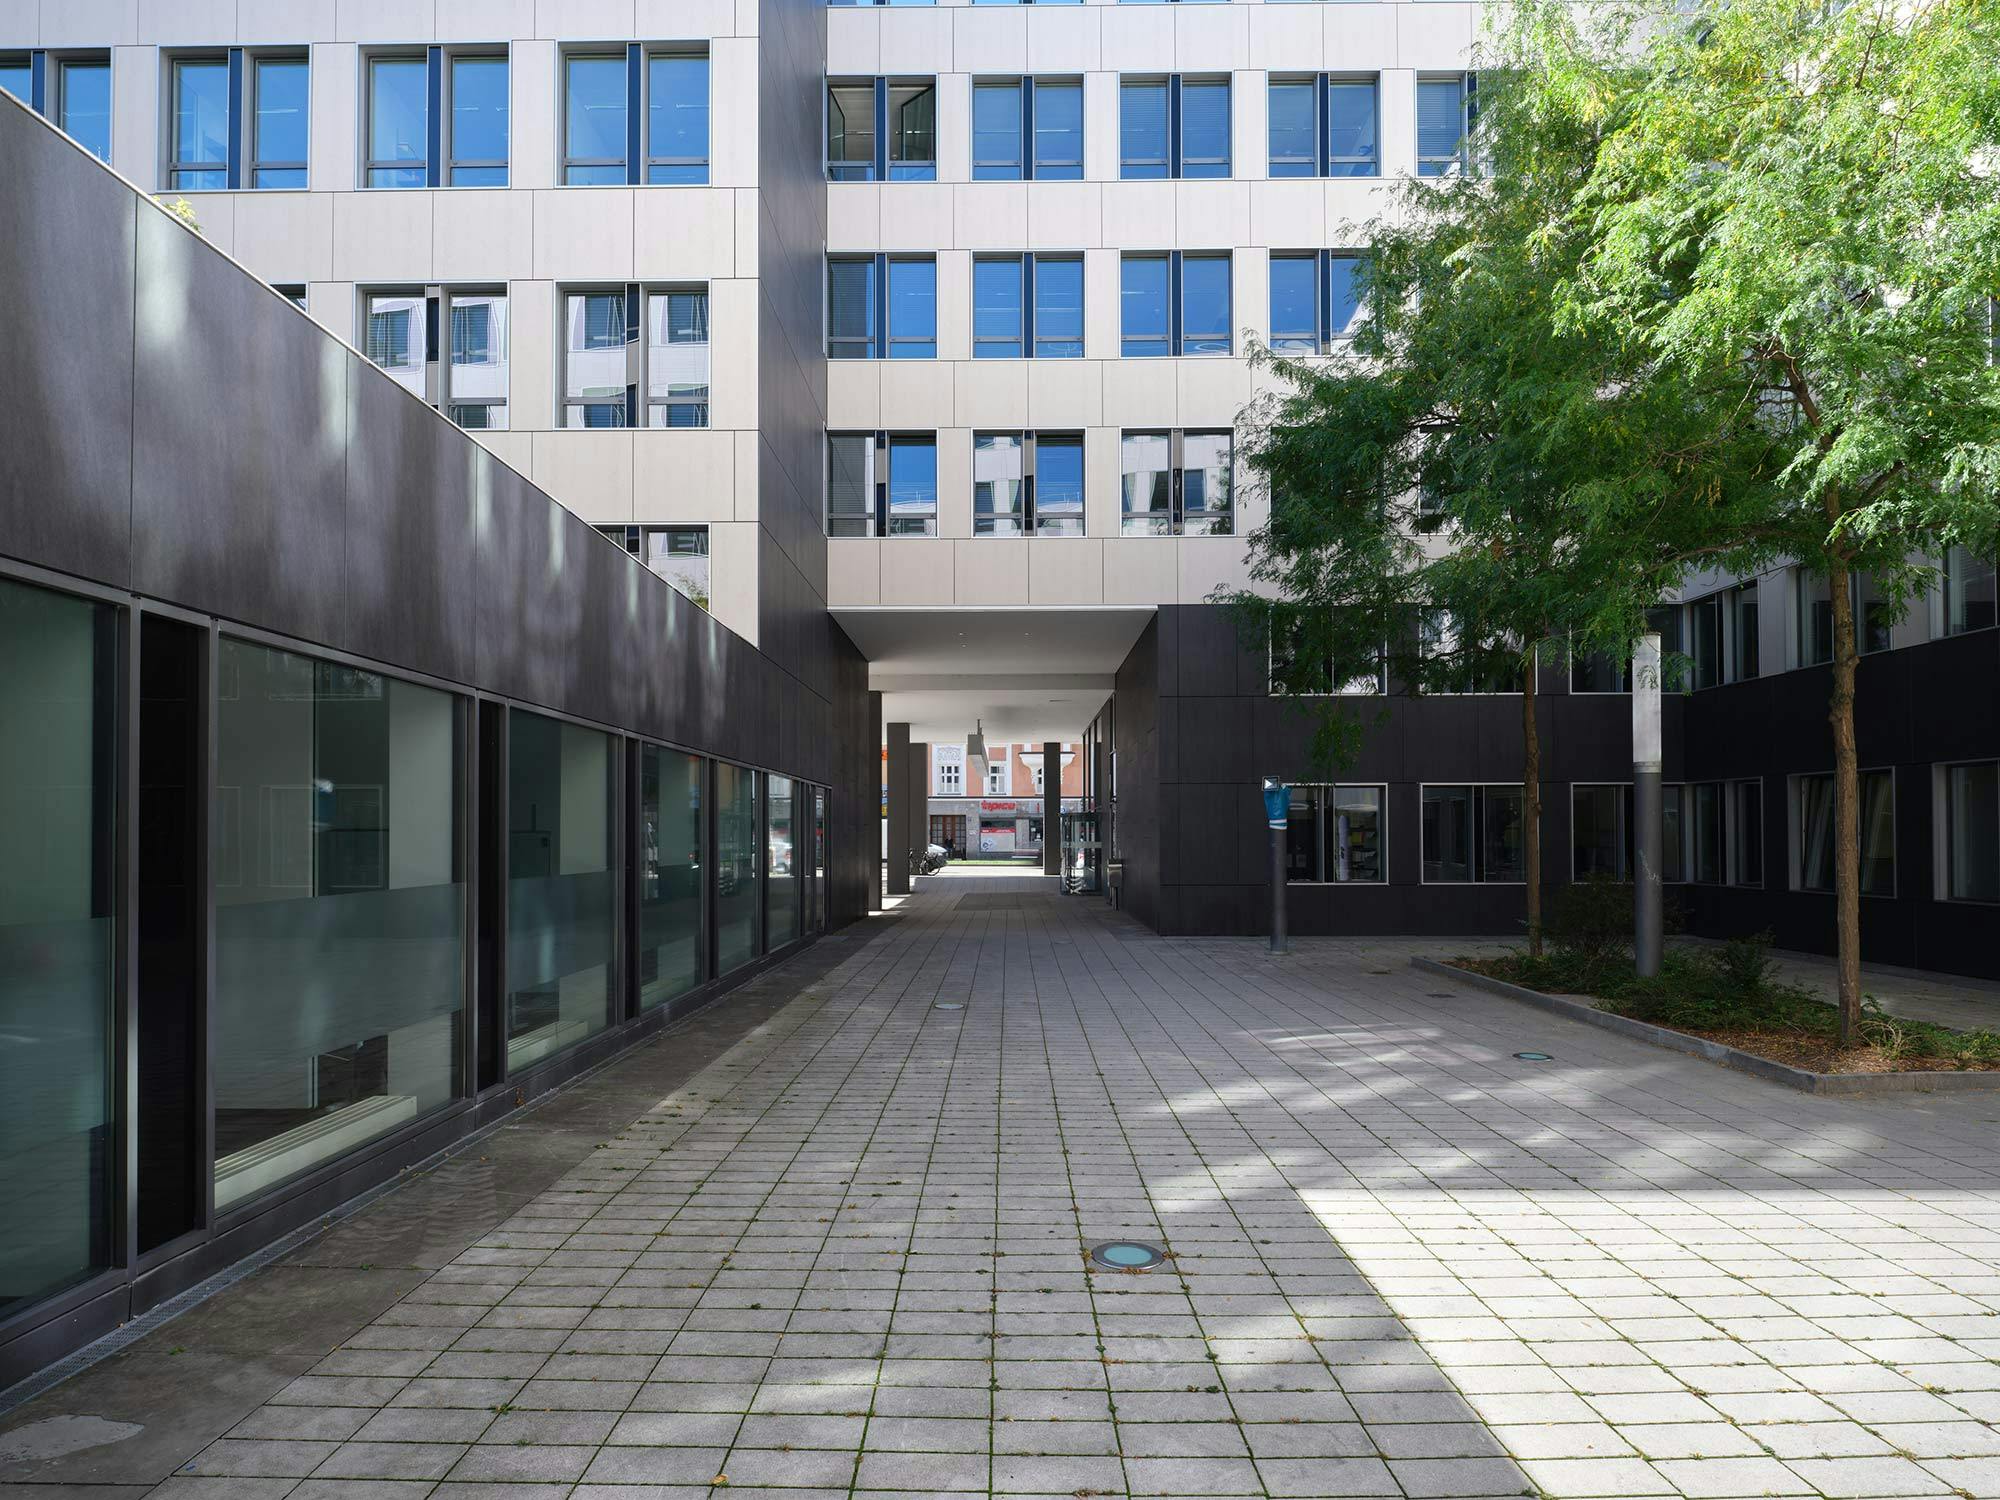 Image of Fachada office building Munich.jpg?auto=format%2Ccompress&ixlib=php 3.3 in A complex Dekton facade for The Warner Building in Michigan - Cosentino